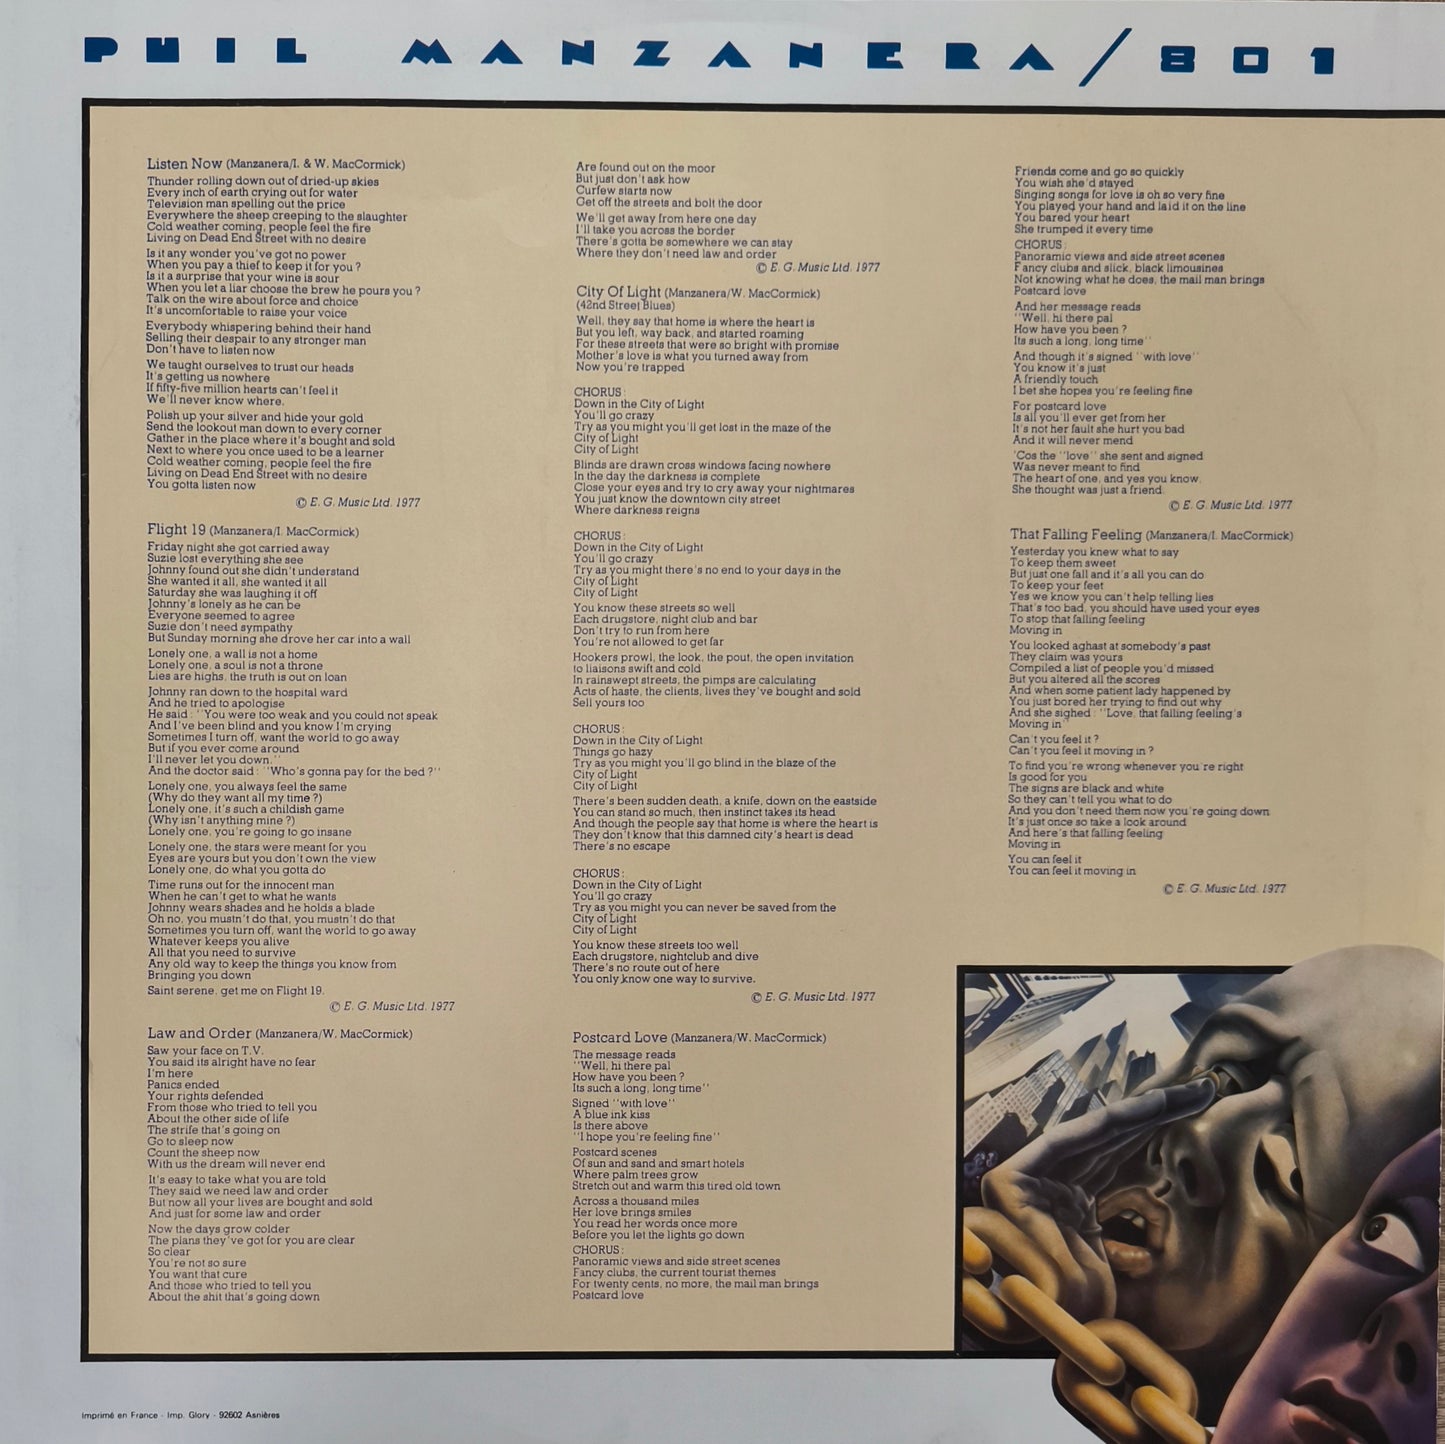 PHIL MANZANERA/801 - Listen Now